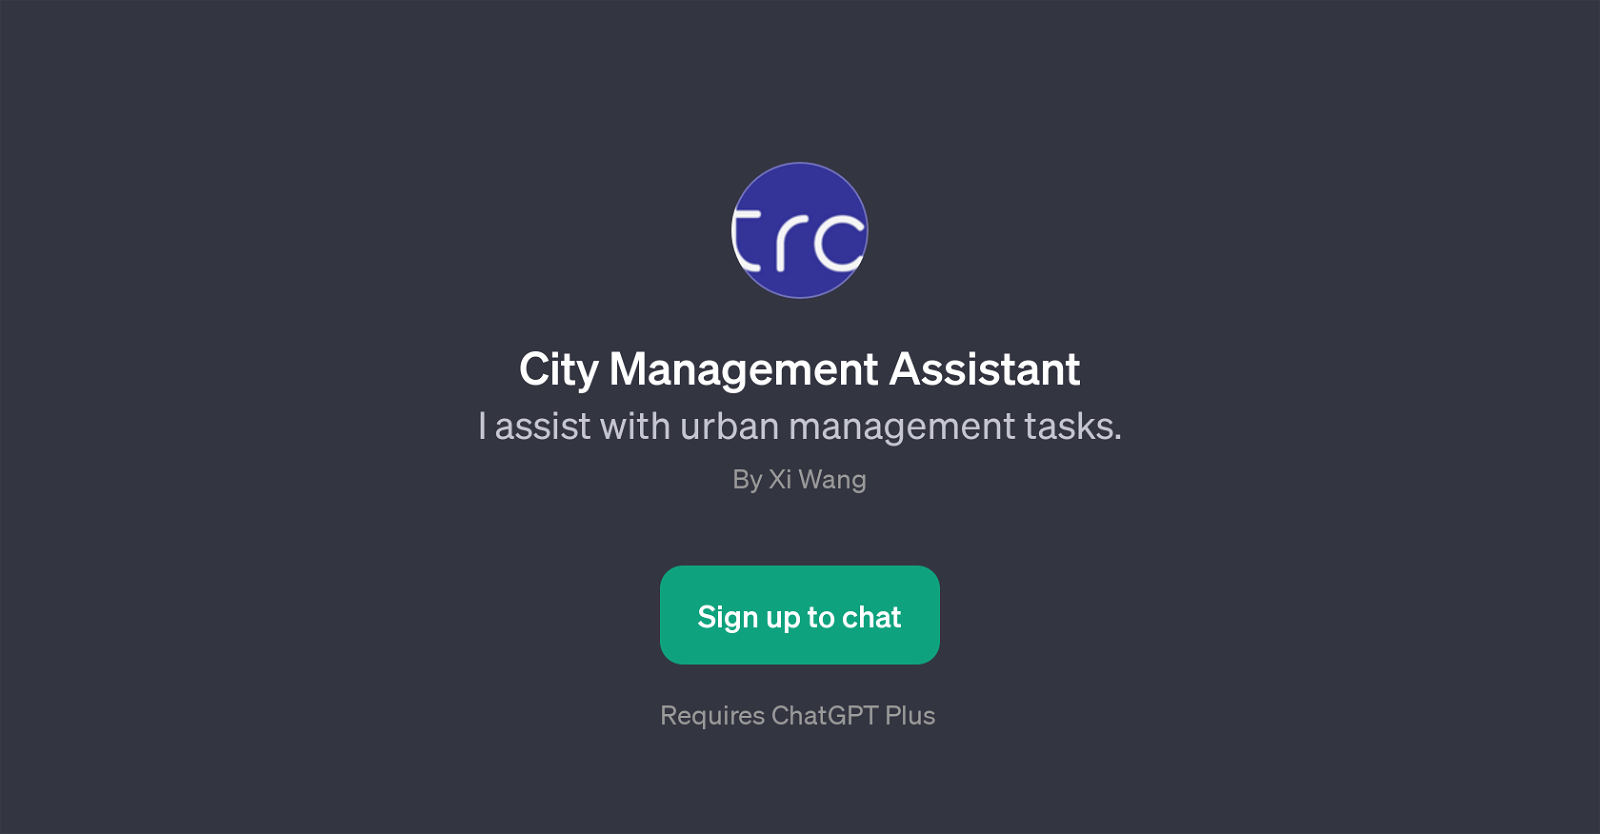 City Management Assistant website